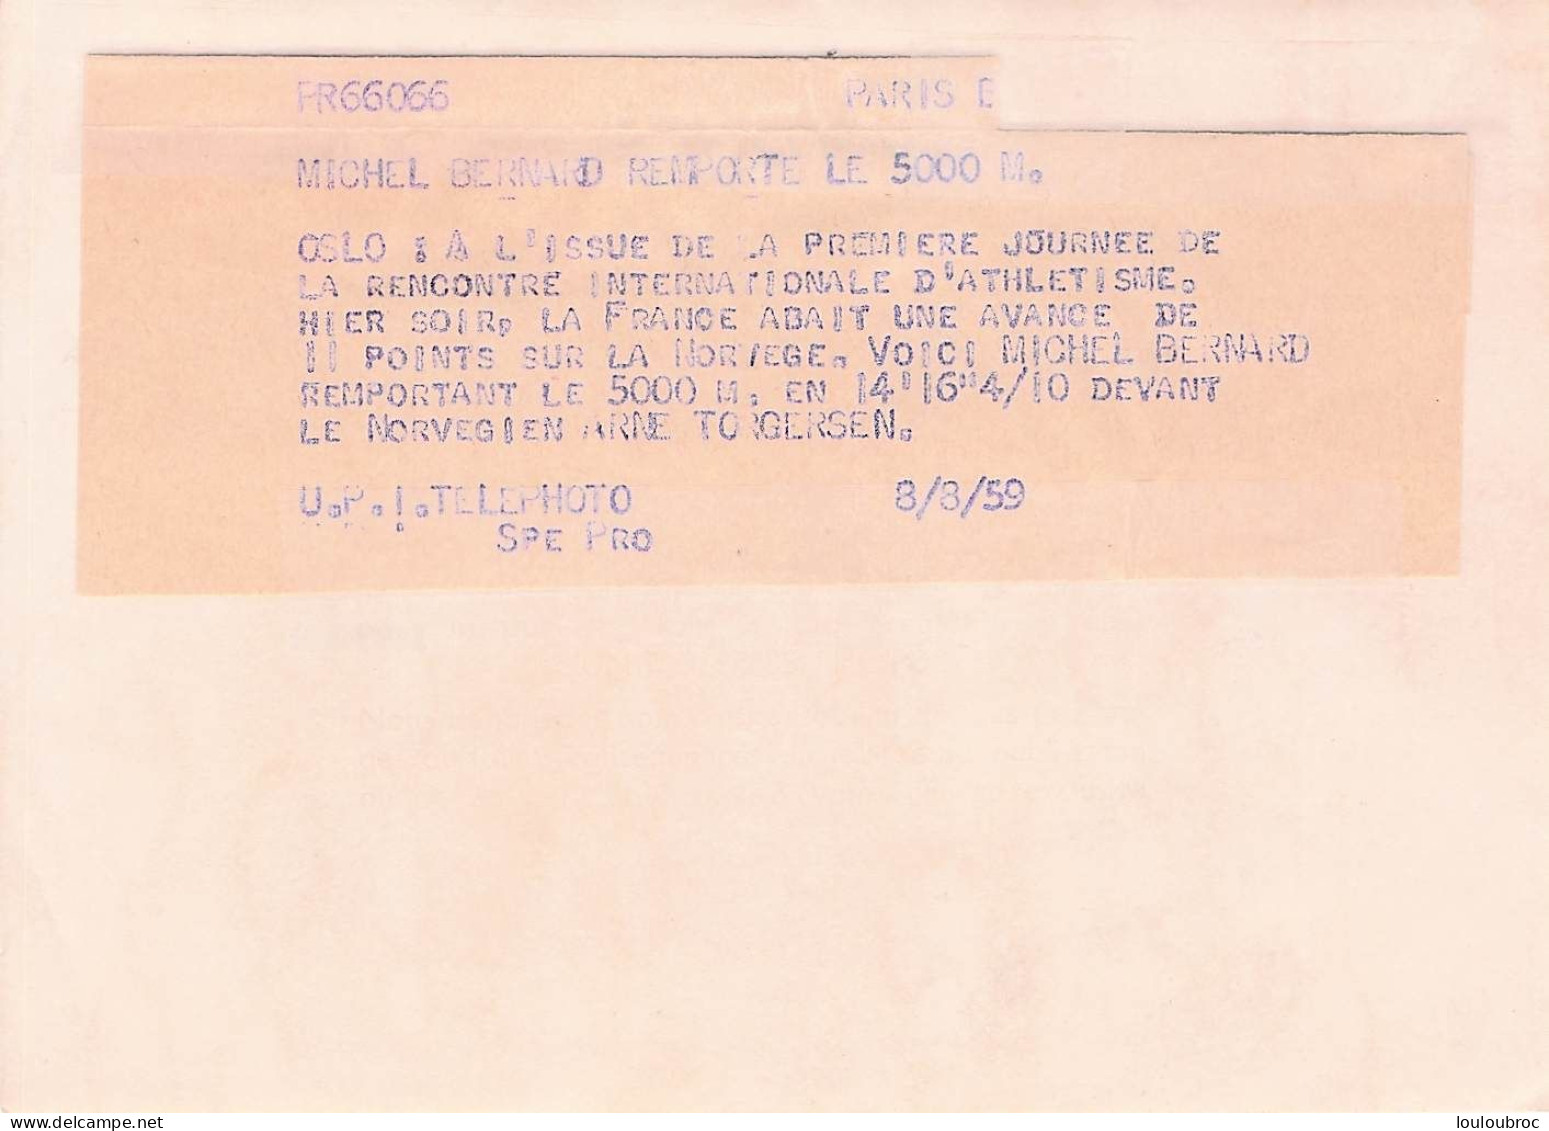 ATHLETISME 08/1959 OSLO MICHEL BERNARD REMPORTE LE 5000 METRES DEVANT TORGERSEN PHOTO 18 X 13 CM - Sport